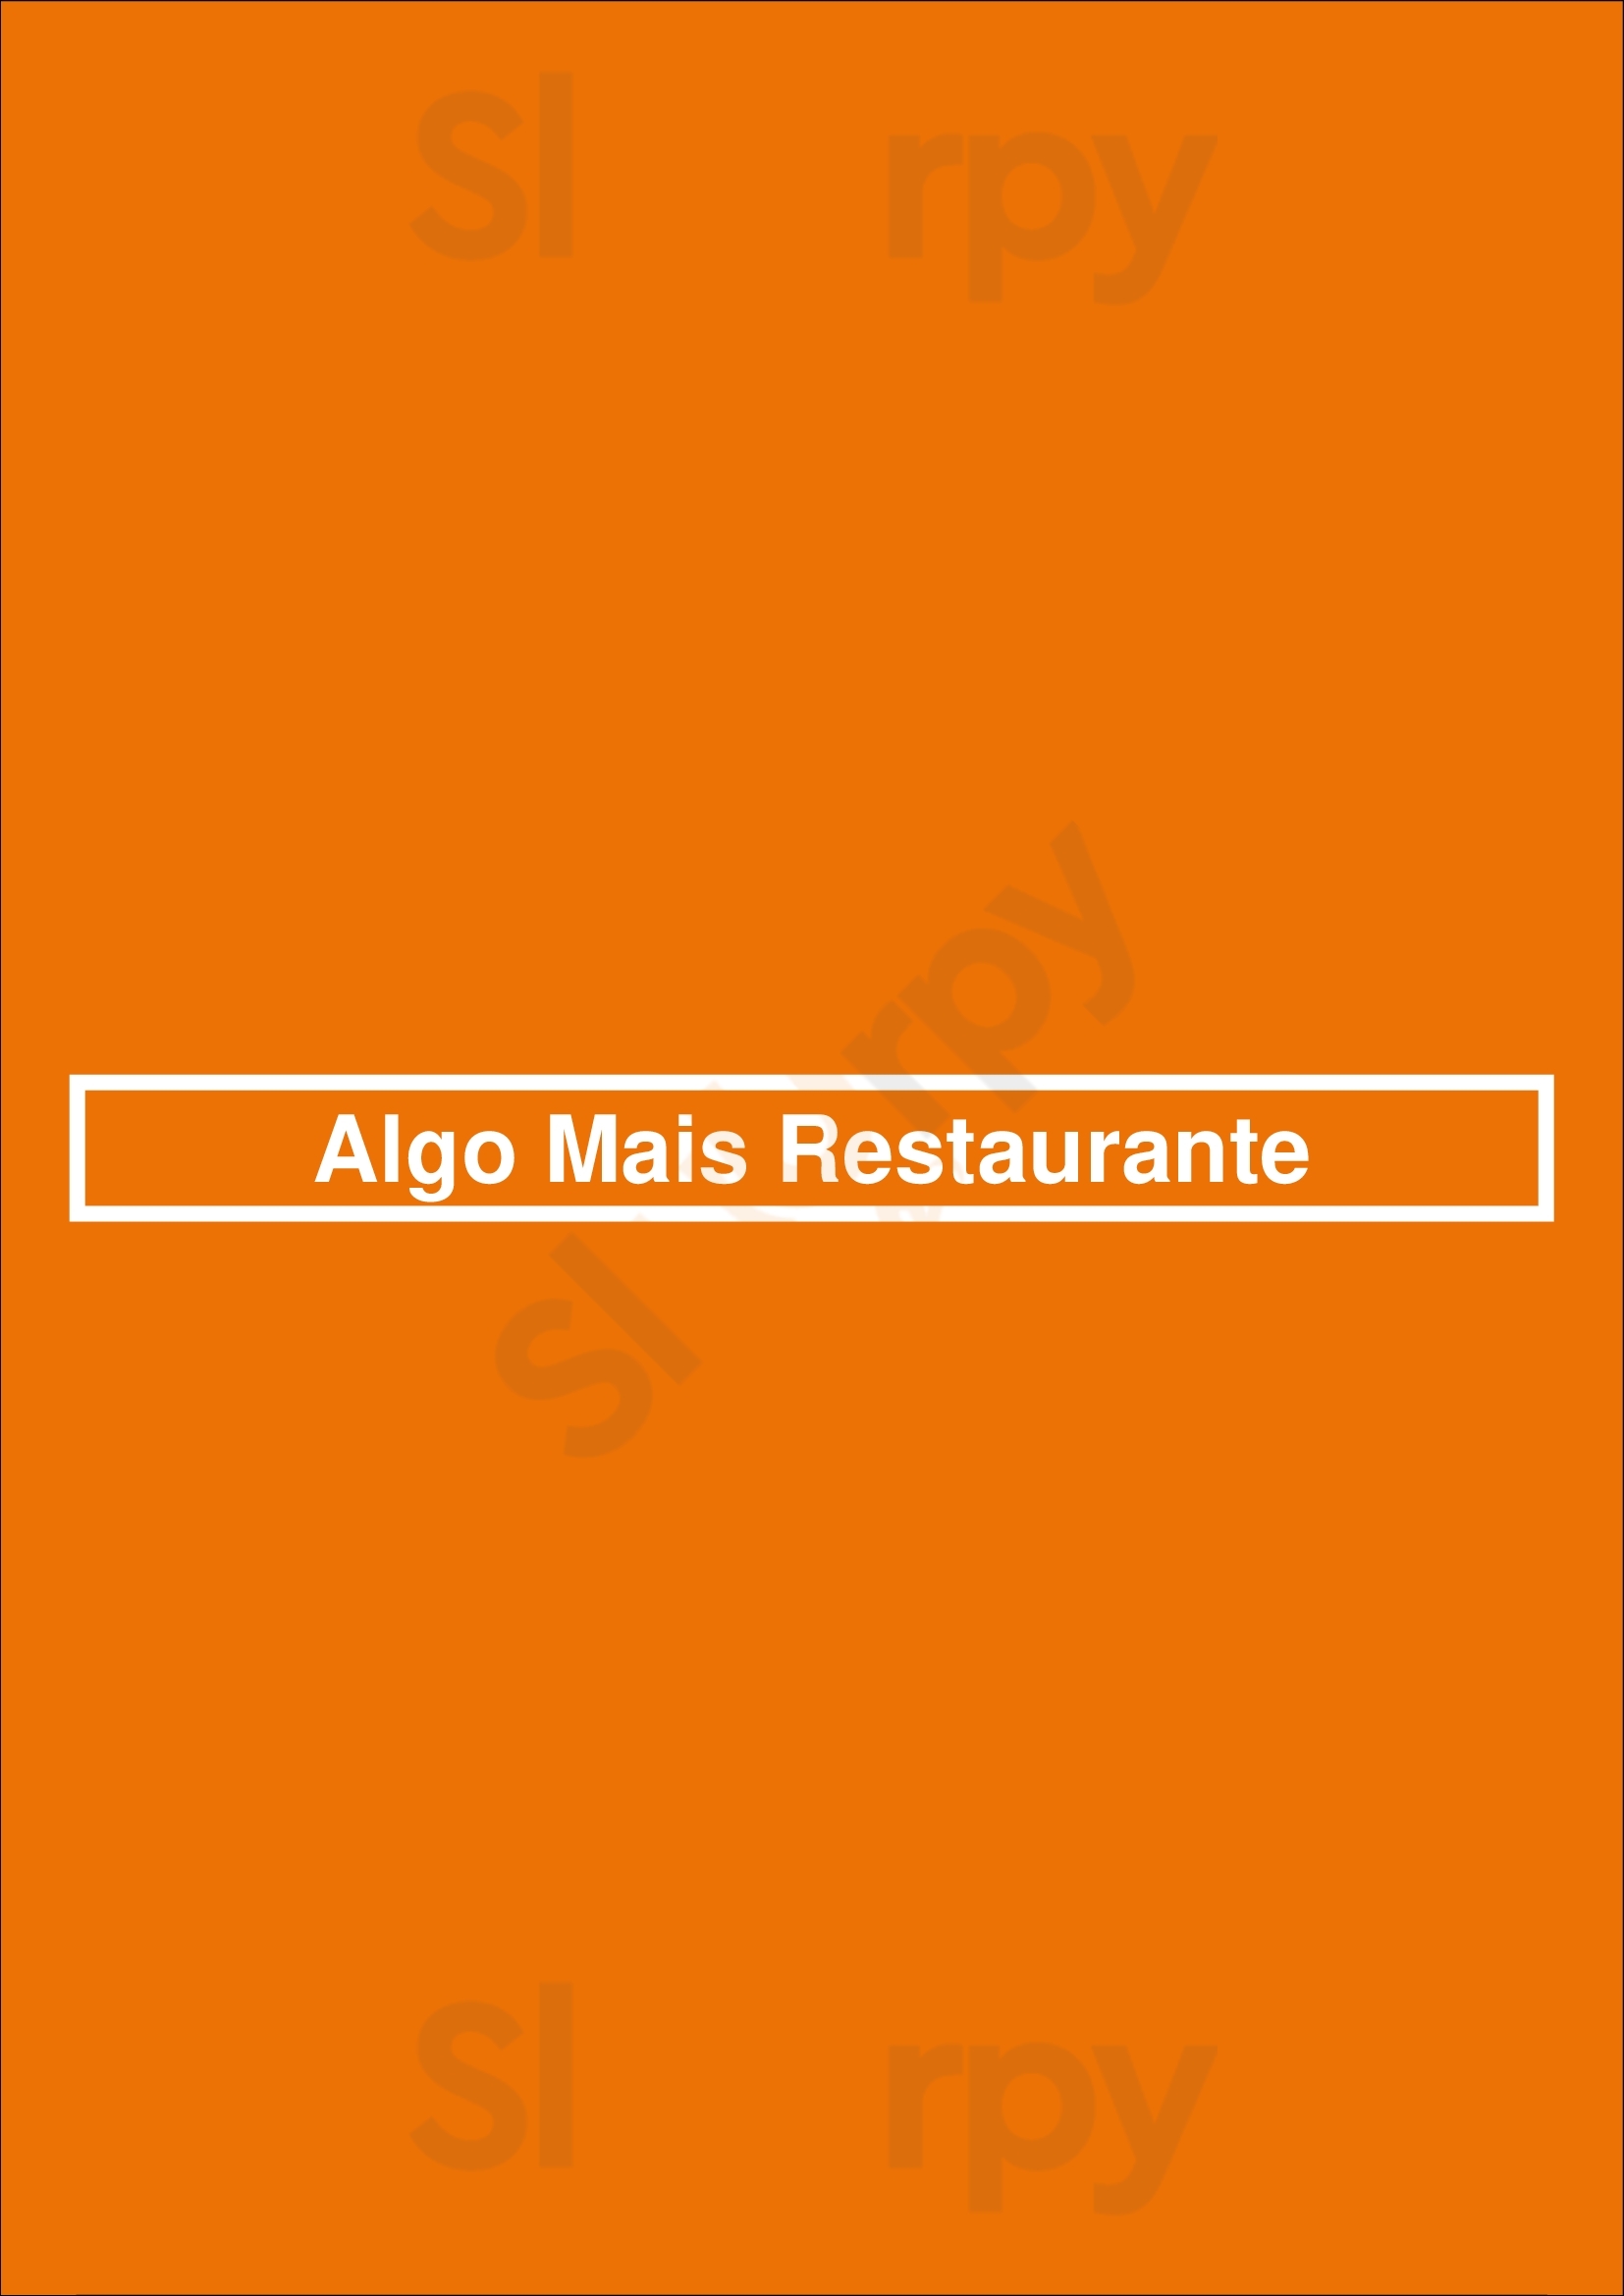 Algo Mais Restaurante Porto Menu - 1